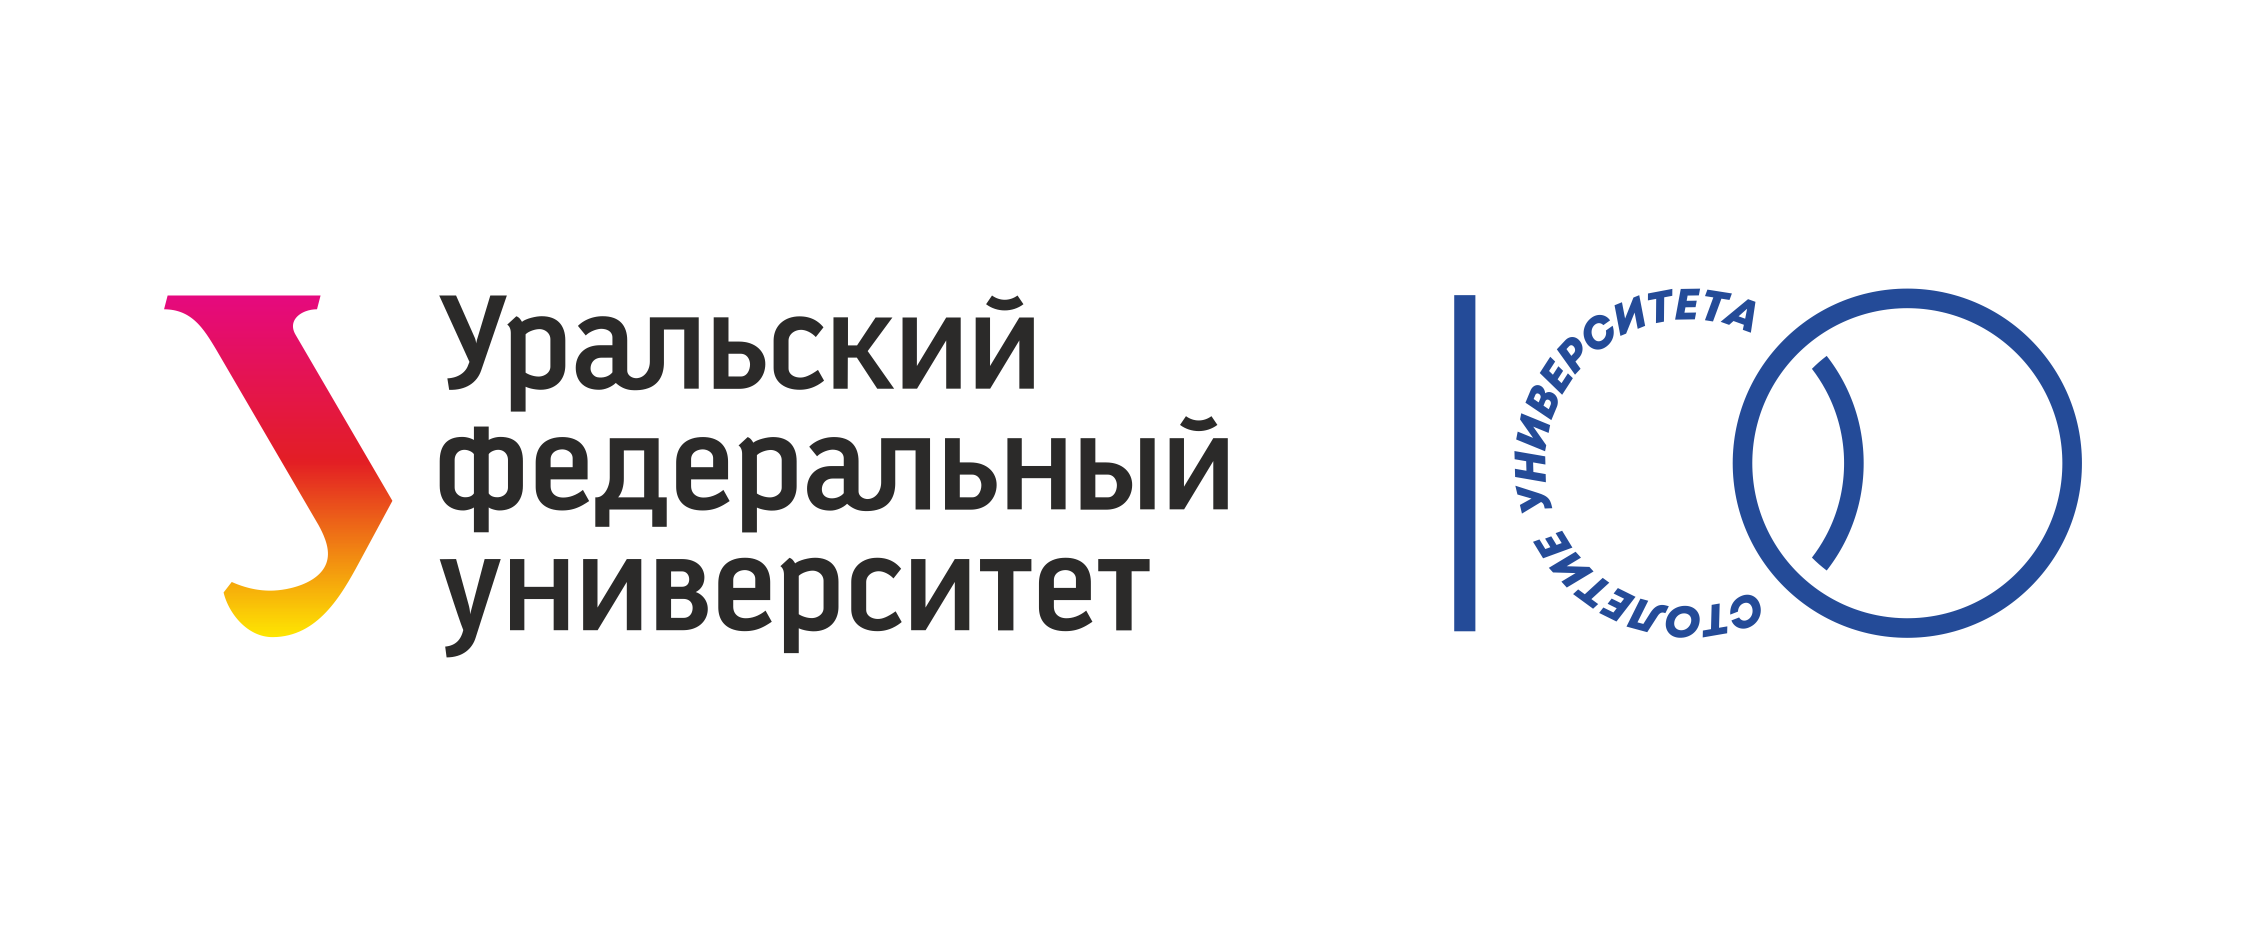 Логотип УПИ. Уральский федеральный университет значок. УПИ университет логотип. Презентация УРФУ.